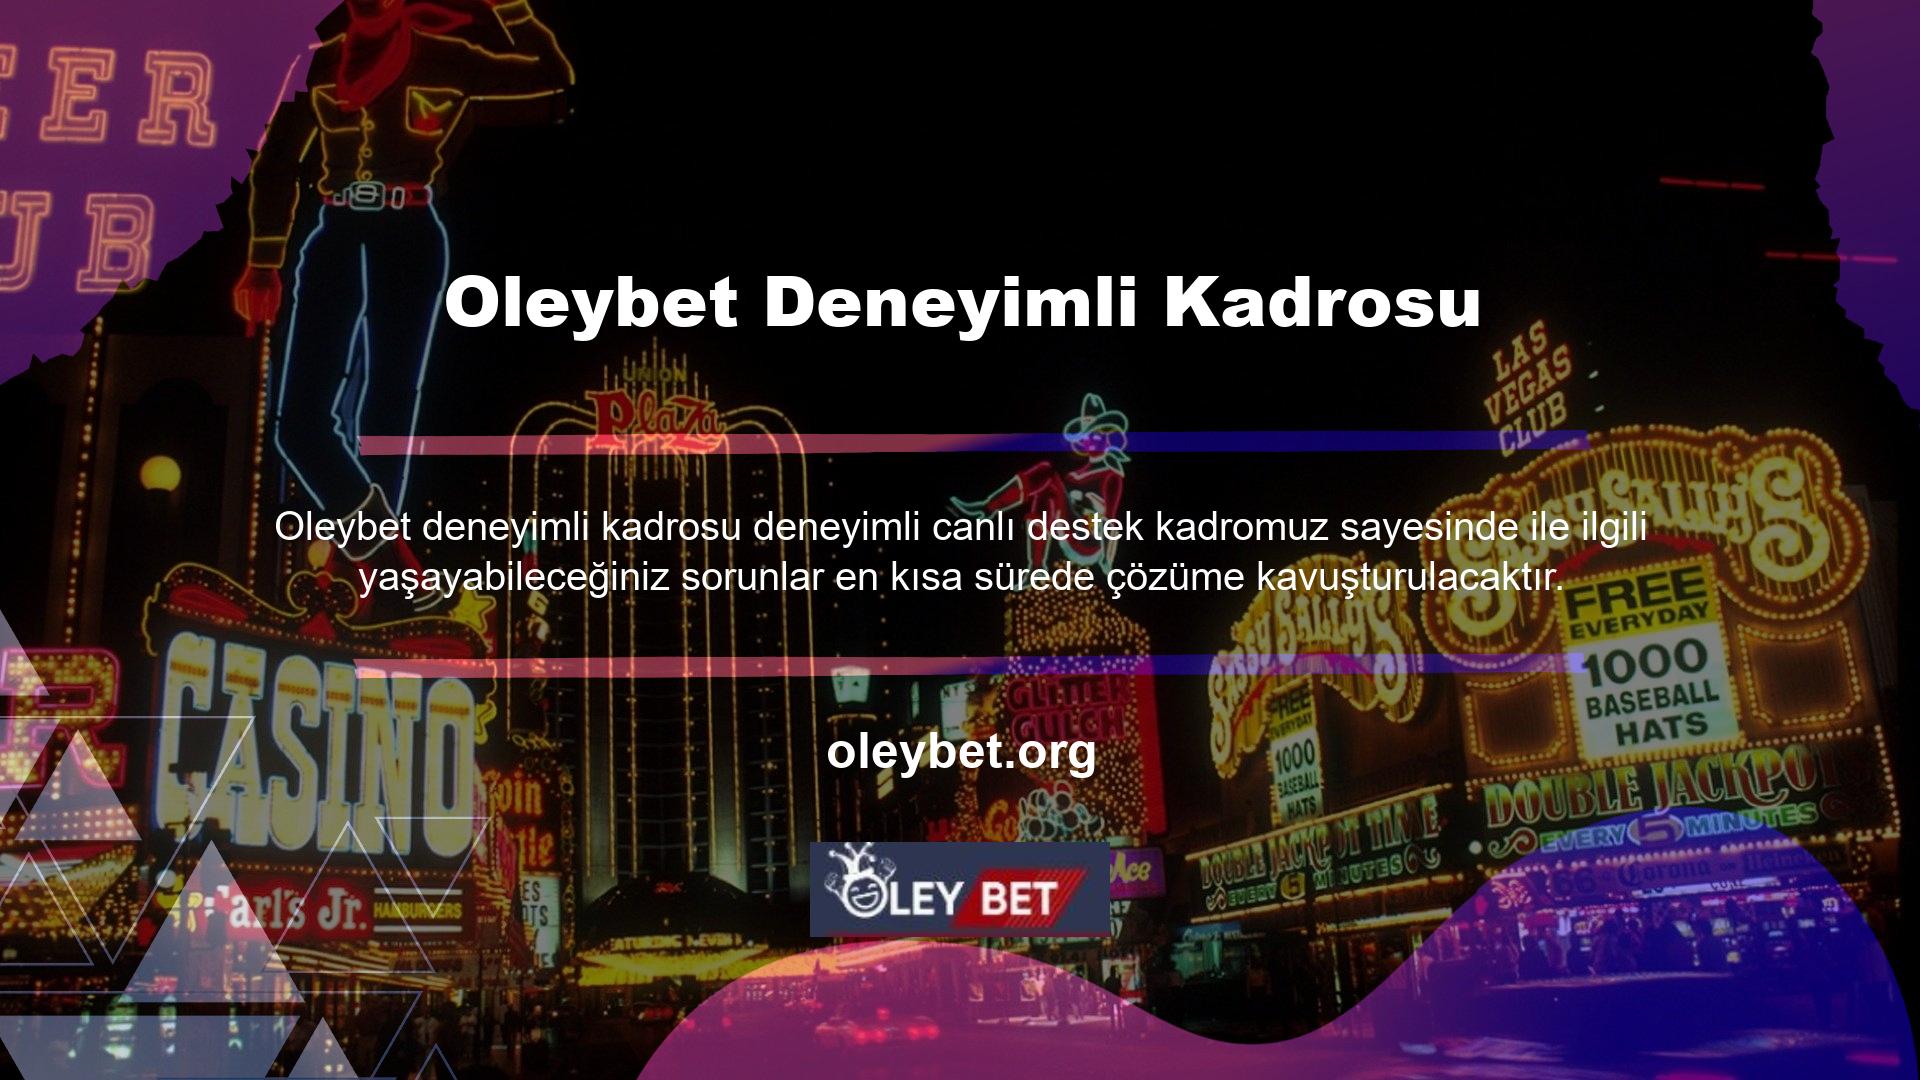 Oleybet, en iyi yasa dışı casino sitelerinin tarafsız listesinde yer almakta ve uzun süredir üstünlüğünü kanıtlamış bir şirket olarak kabul edilmektedir